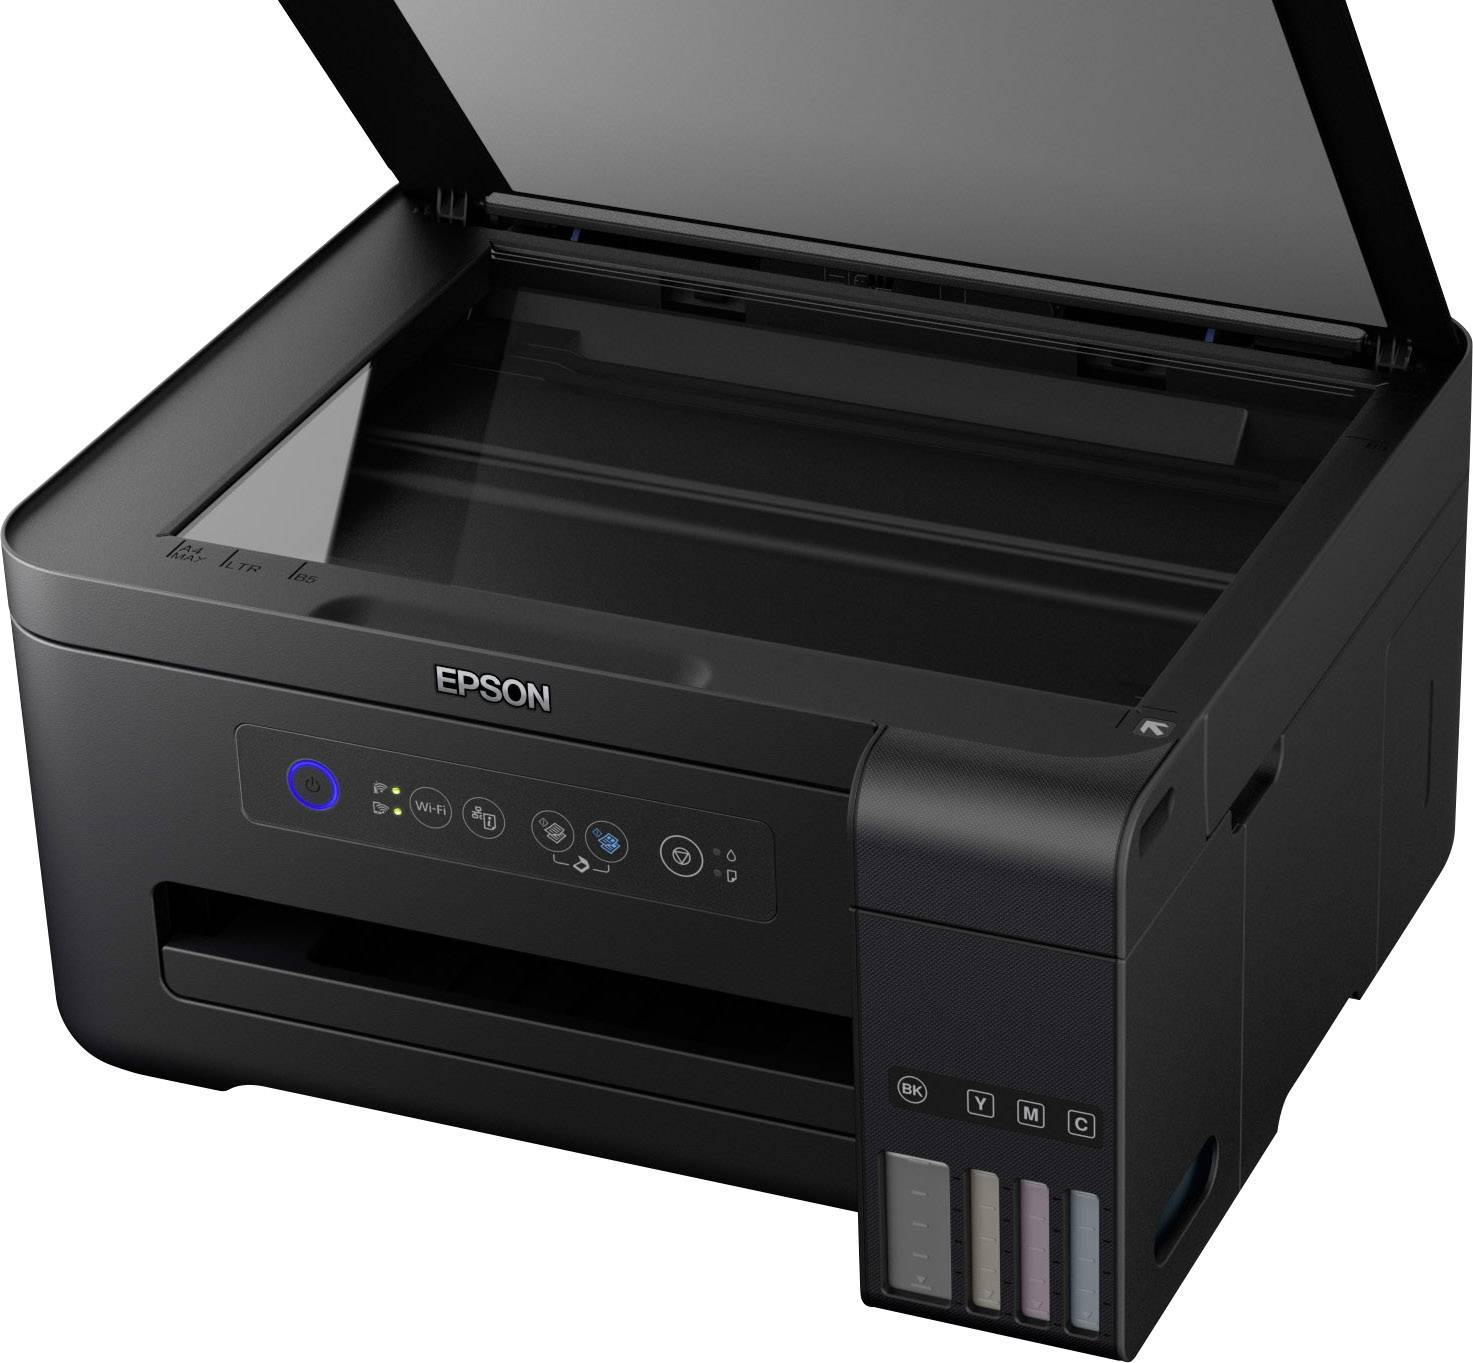  Epson  EcoTank ET 2700  Colour inkjet multifunction printer 